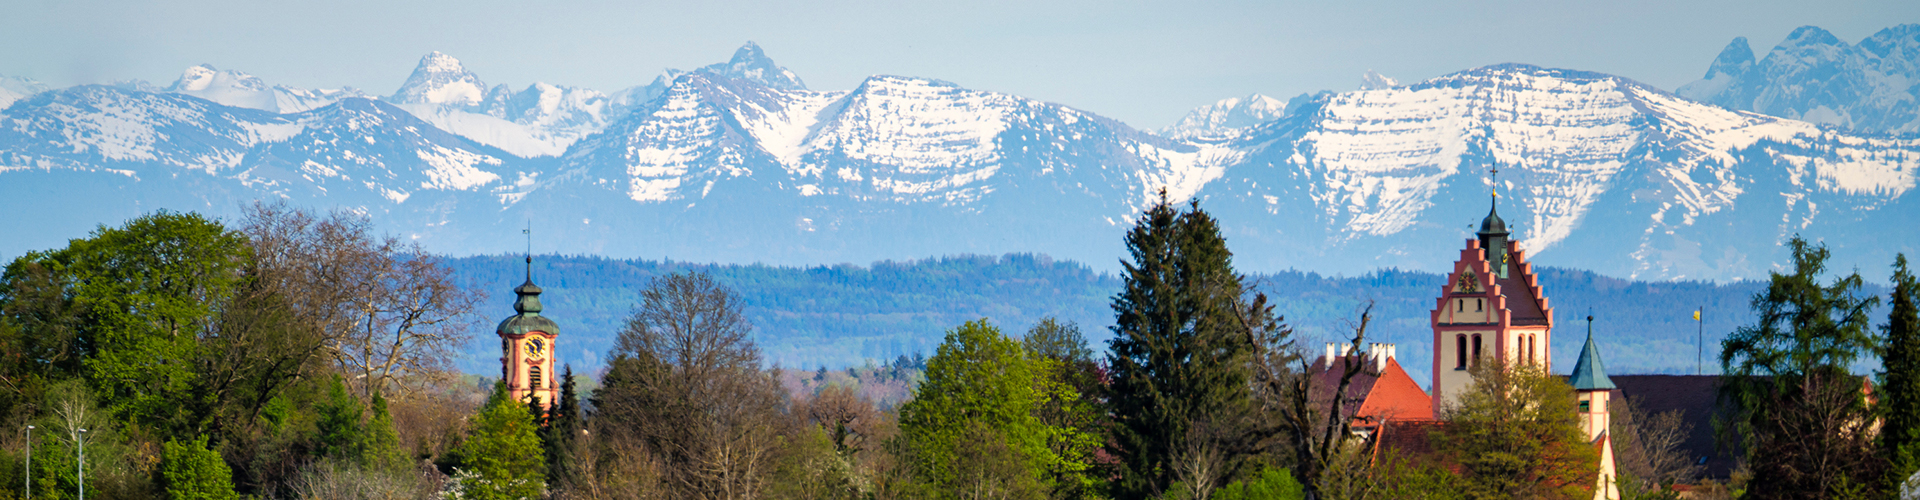 Blick auf die Alpen, vordergründig Kirchturmspitzen der Gemeinde Altshausen. Es herrscht klares Wetter.